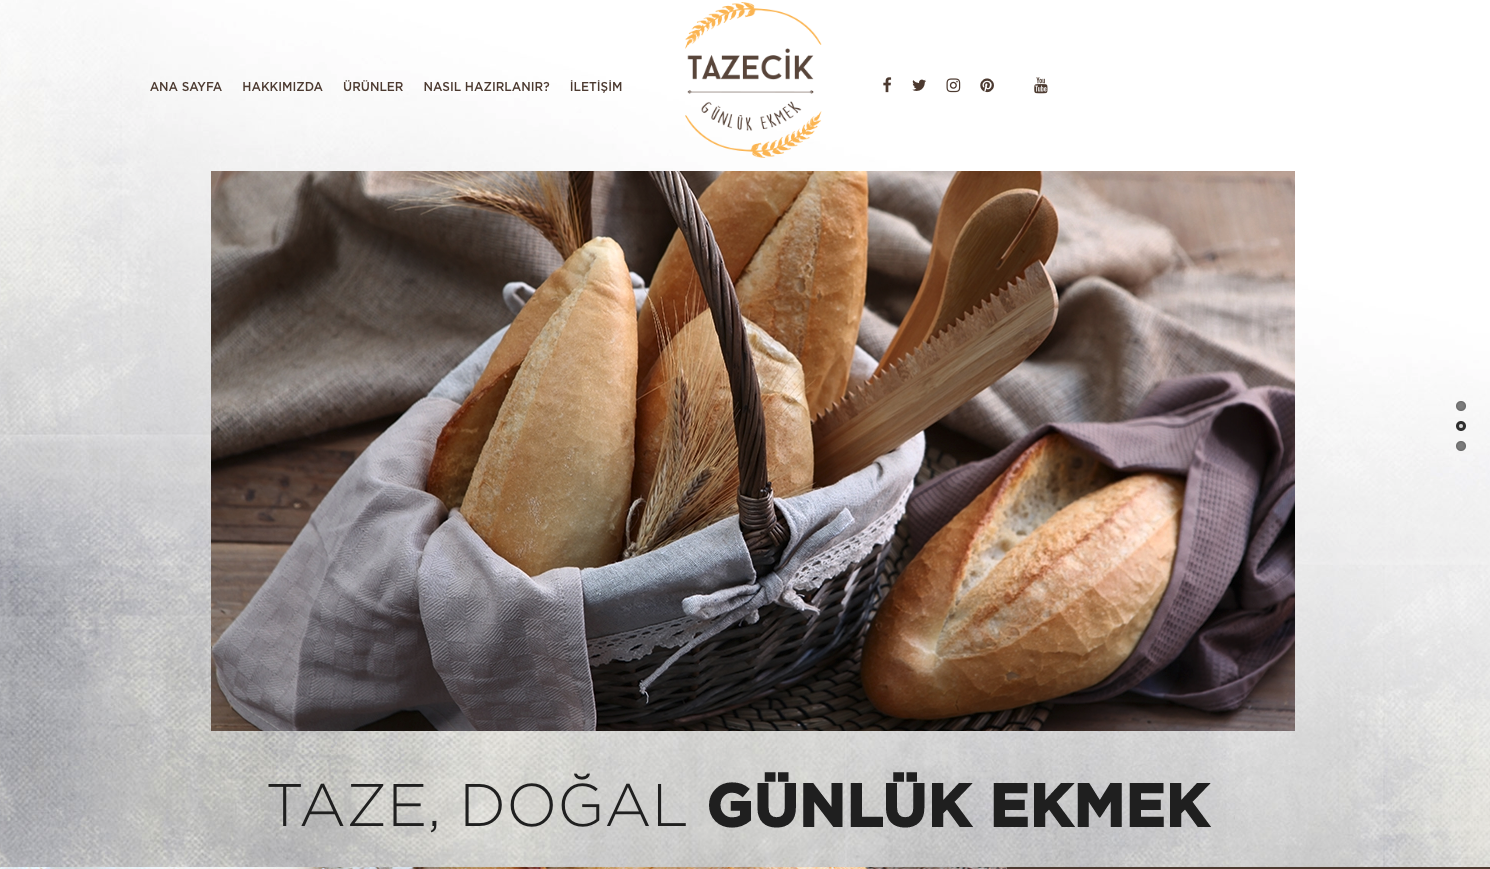 tazecikgida.com